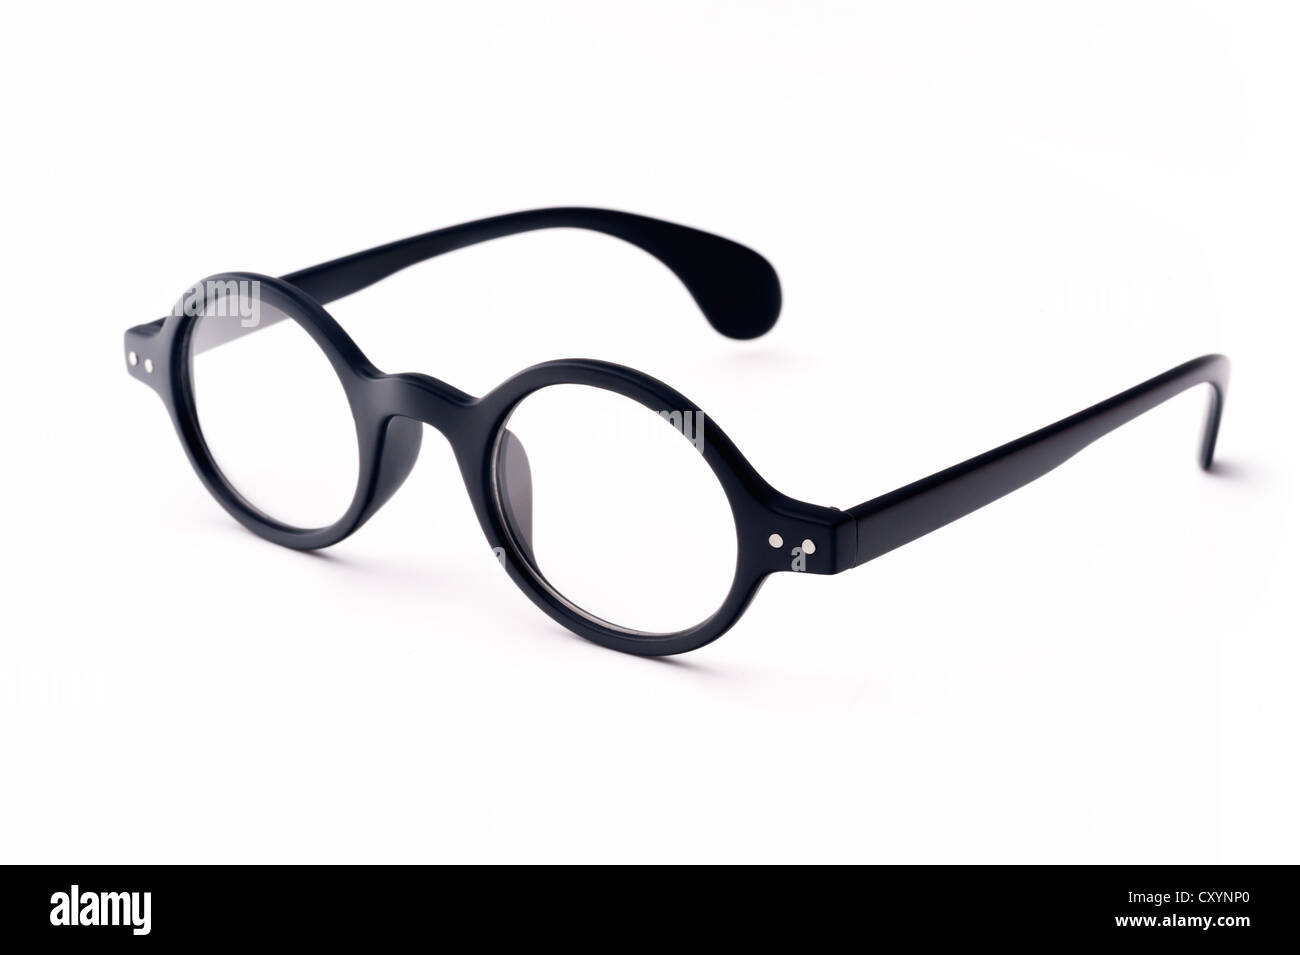 Vieilles lunettes rond noir, isolé sur fond blanc Banque D'Images